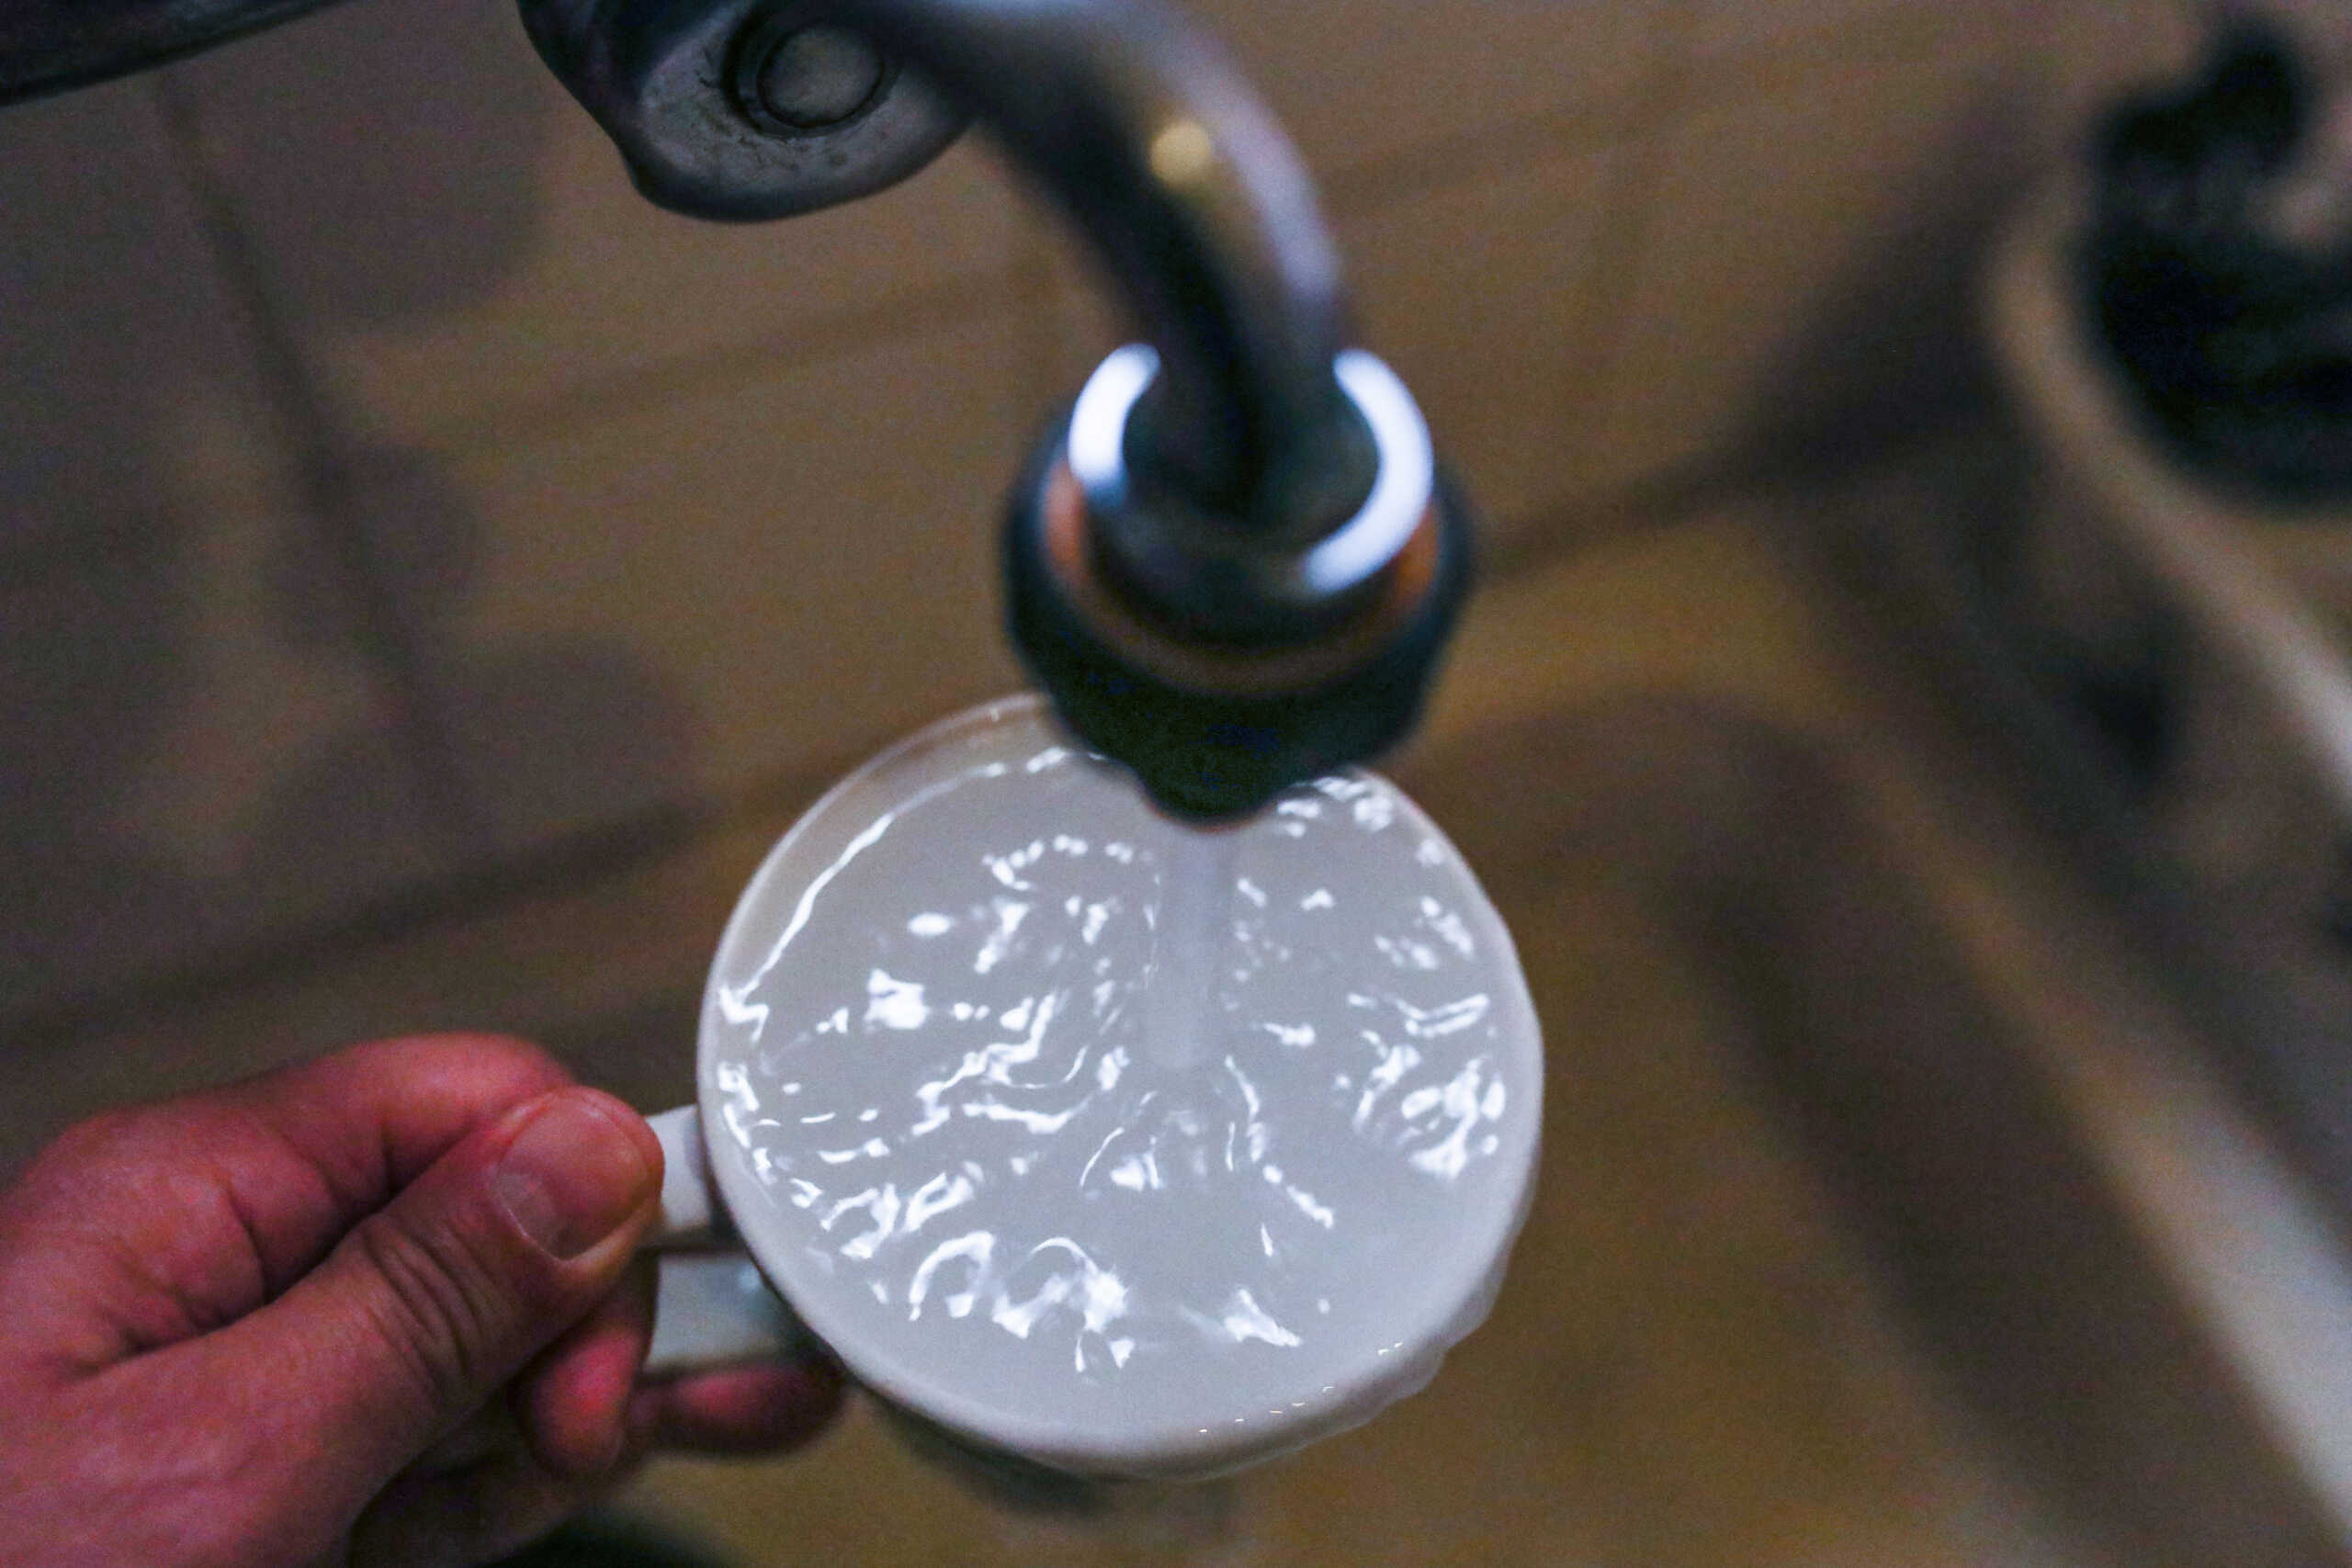 Μαγνησία: Οδηγίες μετά τις διαπιστώσεις για το μολυσμένο νερό που προκάλεσε γαστρεντερίτιδα σε 100 άτομα